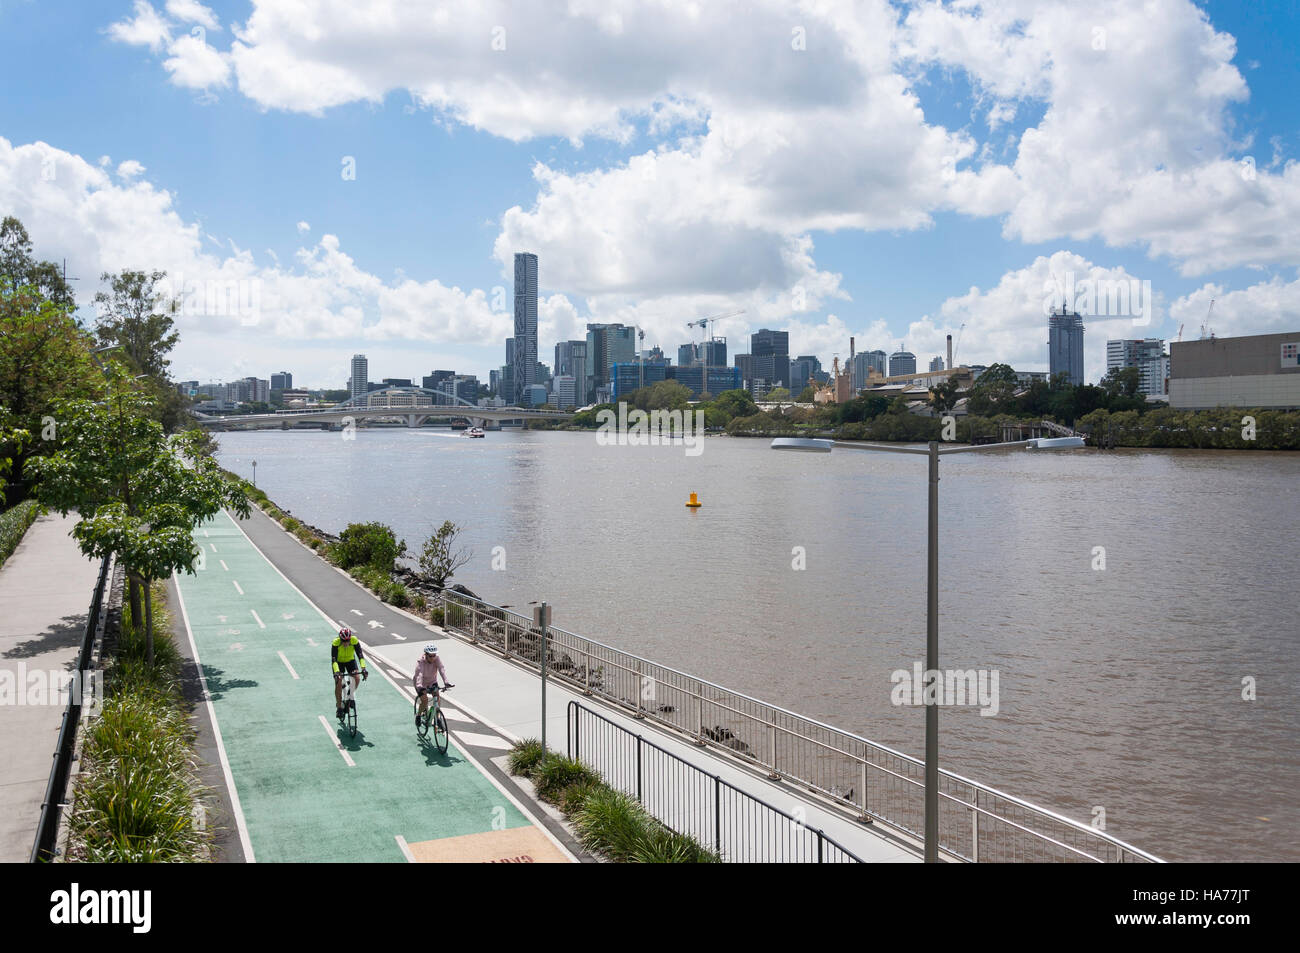 City skyline and Bicentennial Bikeway on banks of Brisbane River, Milton, Brisbane, Queensland, Australia Stock Photo